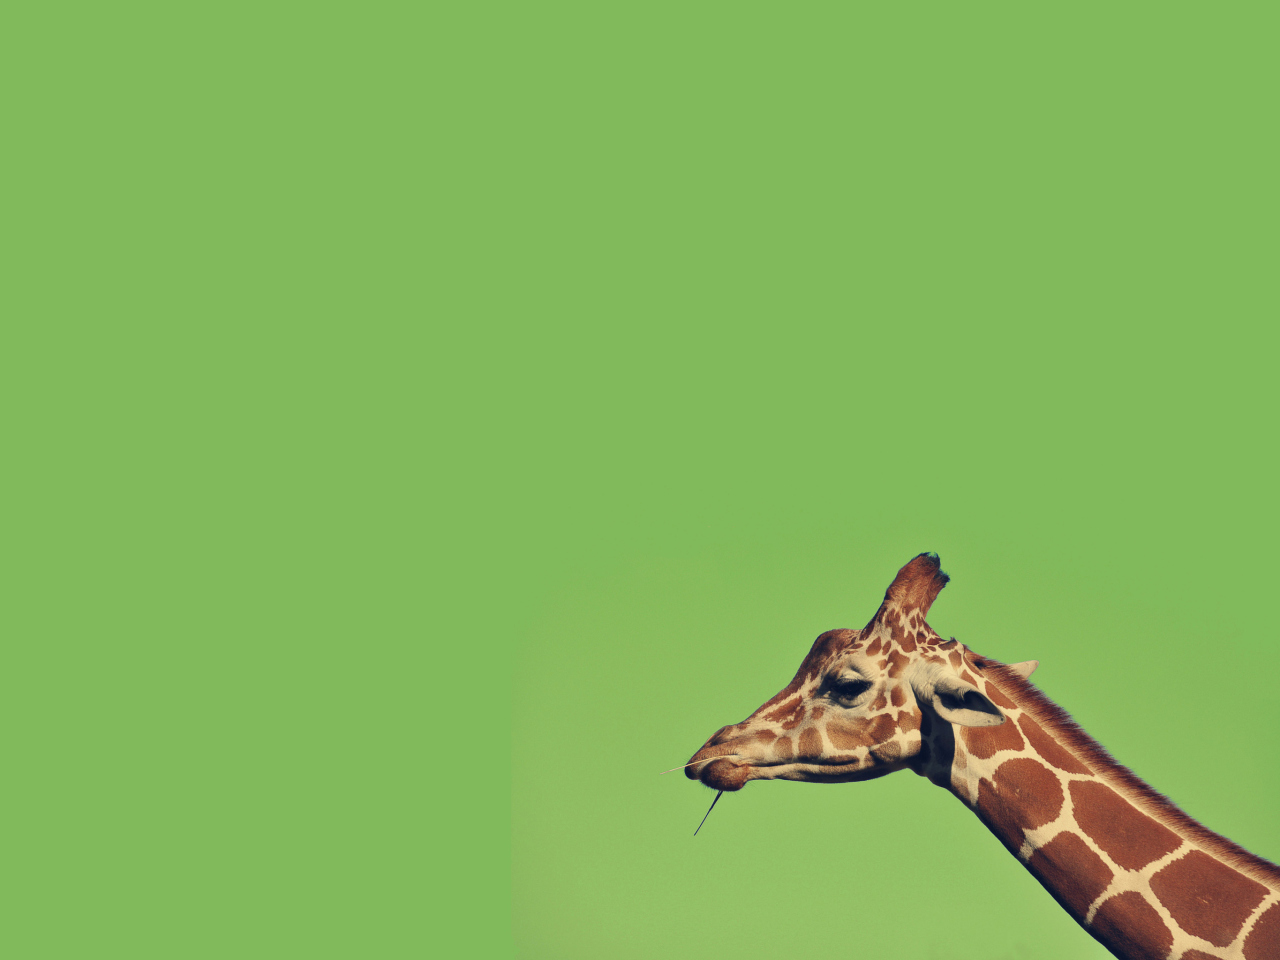 Giraffe wallpaper 1280x960